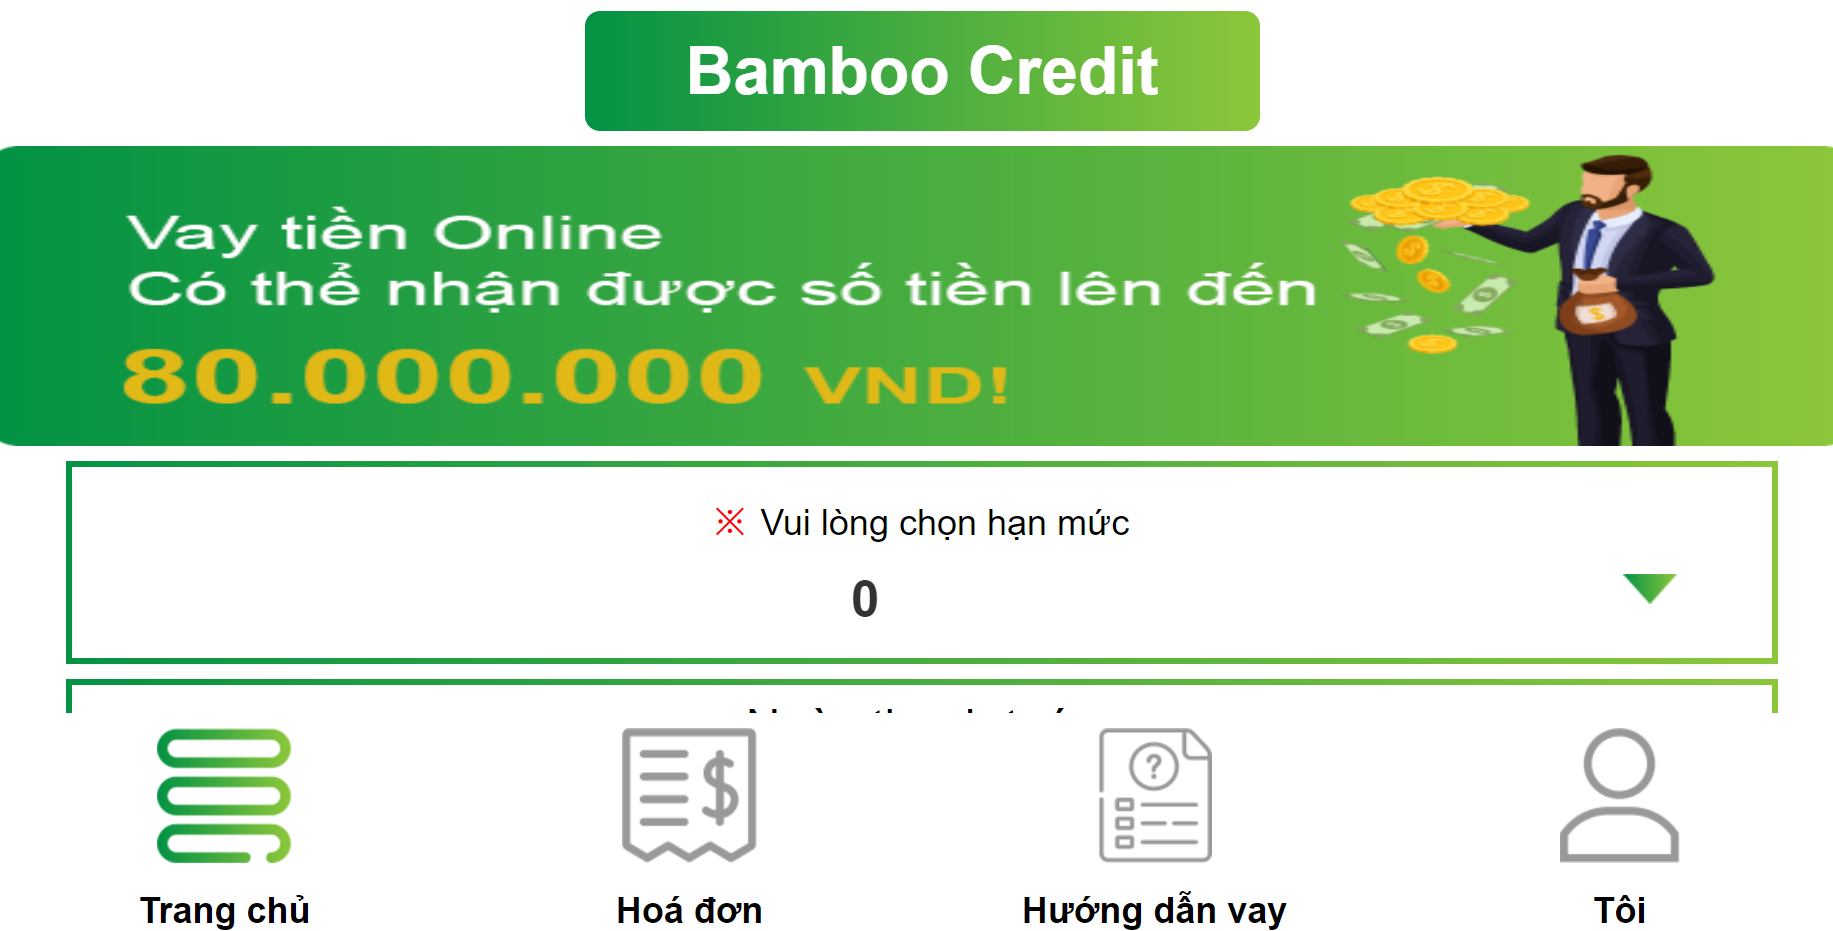 Bamboo Credit, Bamboo vay